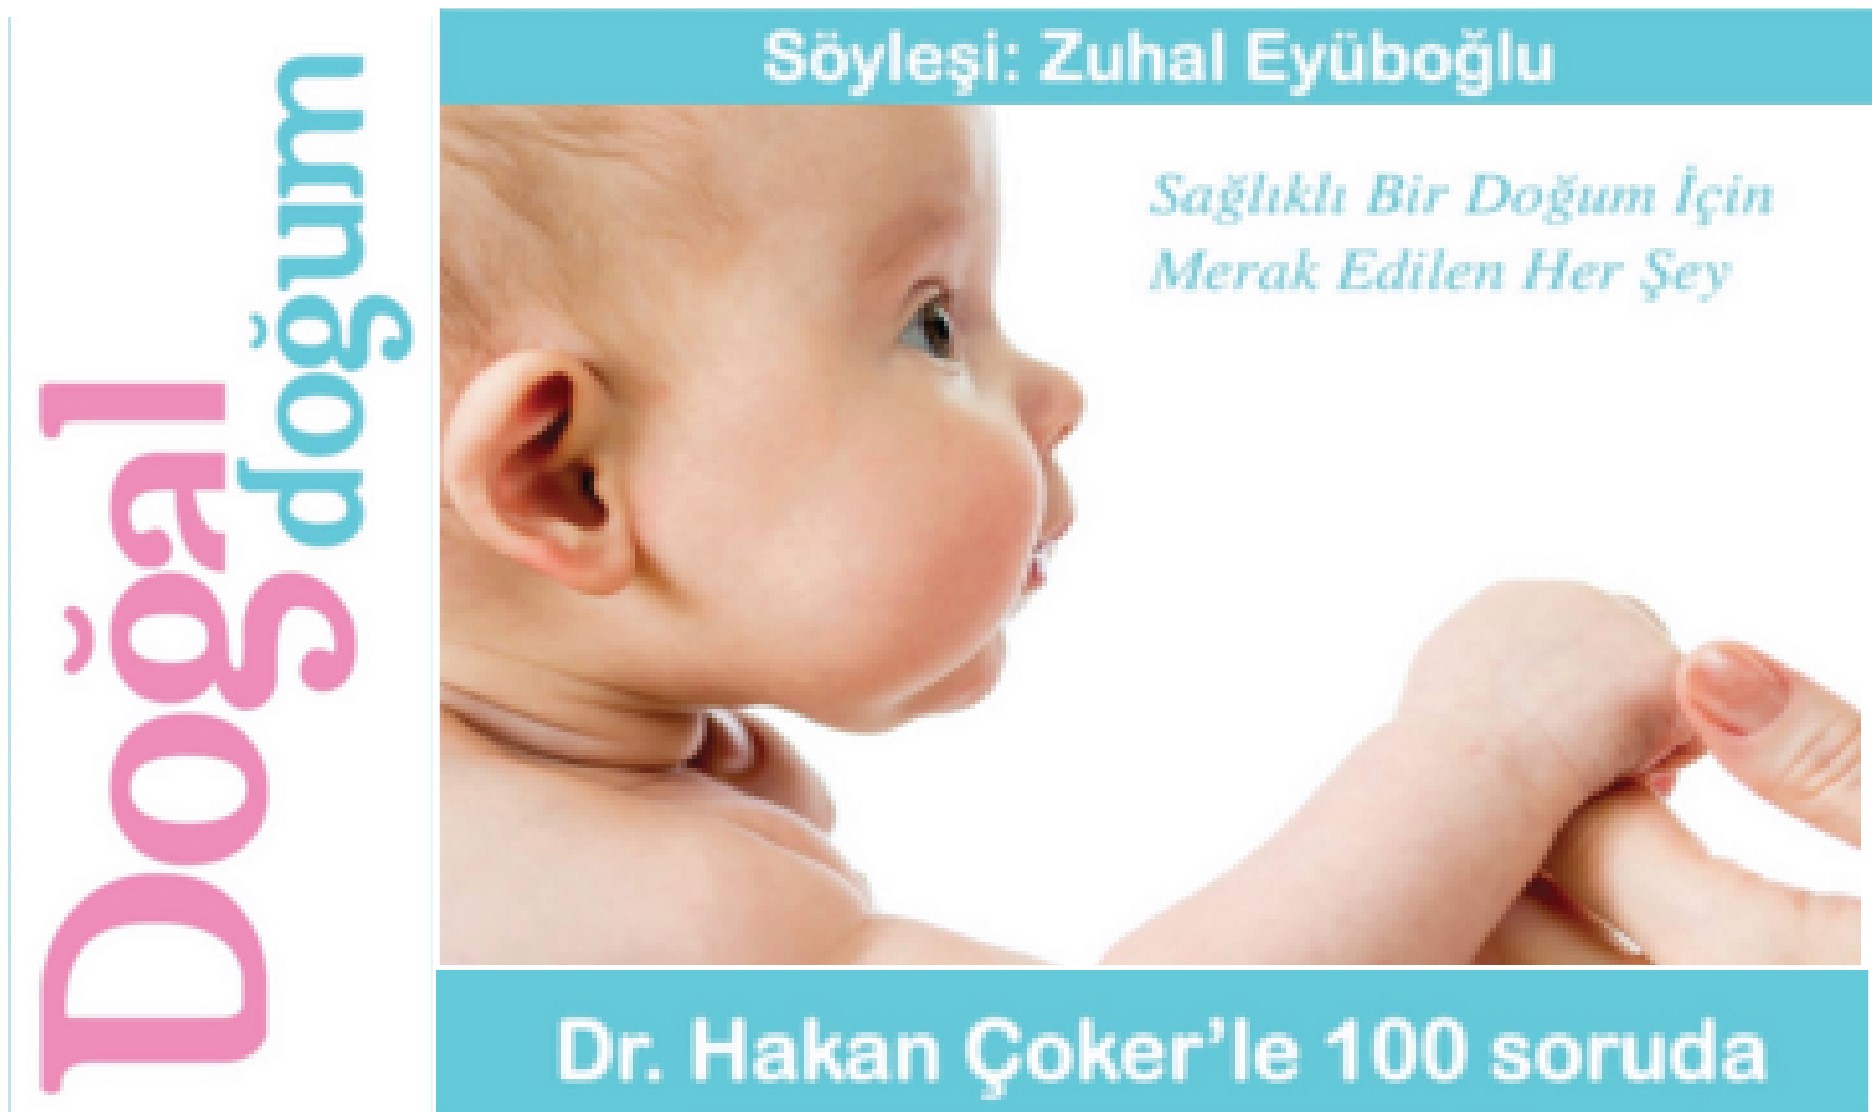 Dr. Hakan Çoker Çoker'le 100 Soruda Doğal Doğum kitabı çıktı.